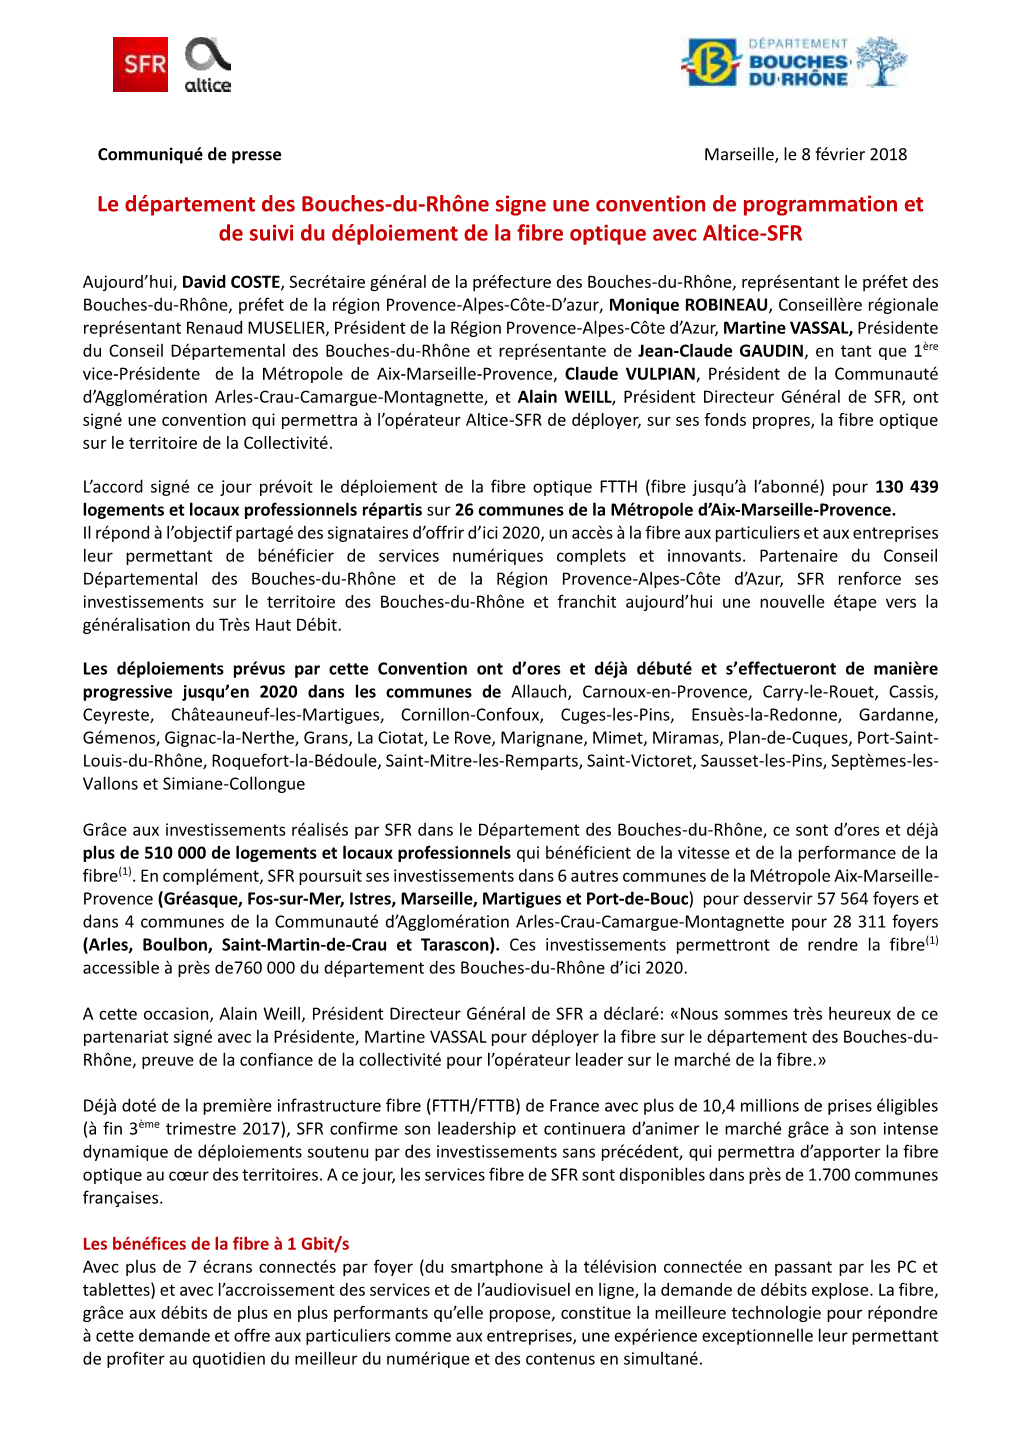 Le Département Des Bouches-Du-Rhône Signe Une Convention De Programmation Et De Suivi Du Déploiement De La Fibre Optique Avec Altice-SFR